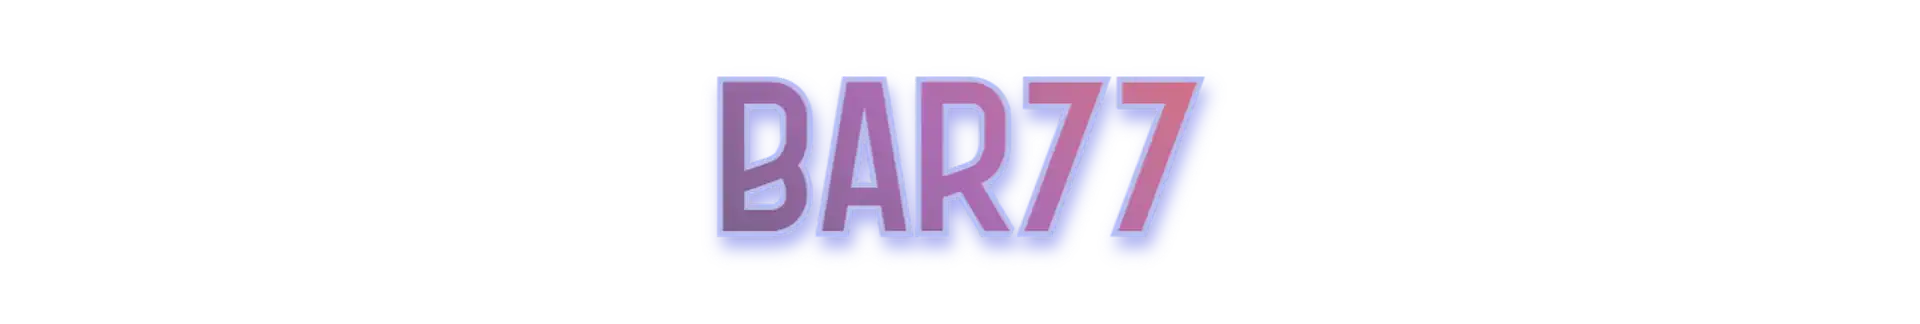 BAR77